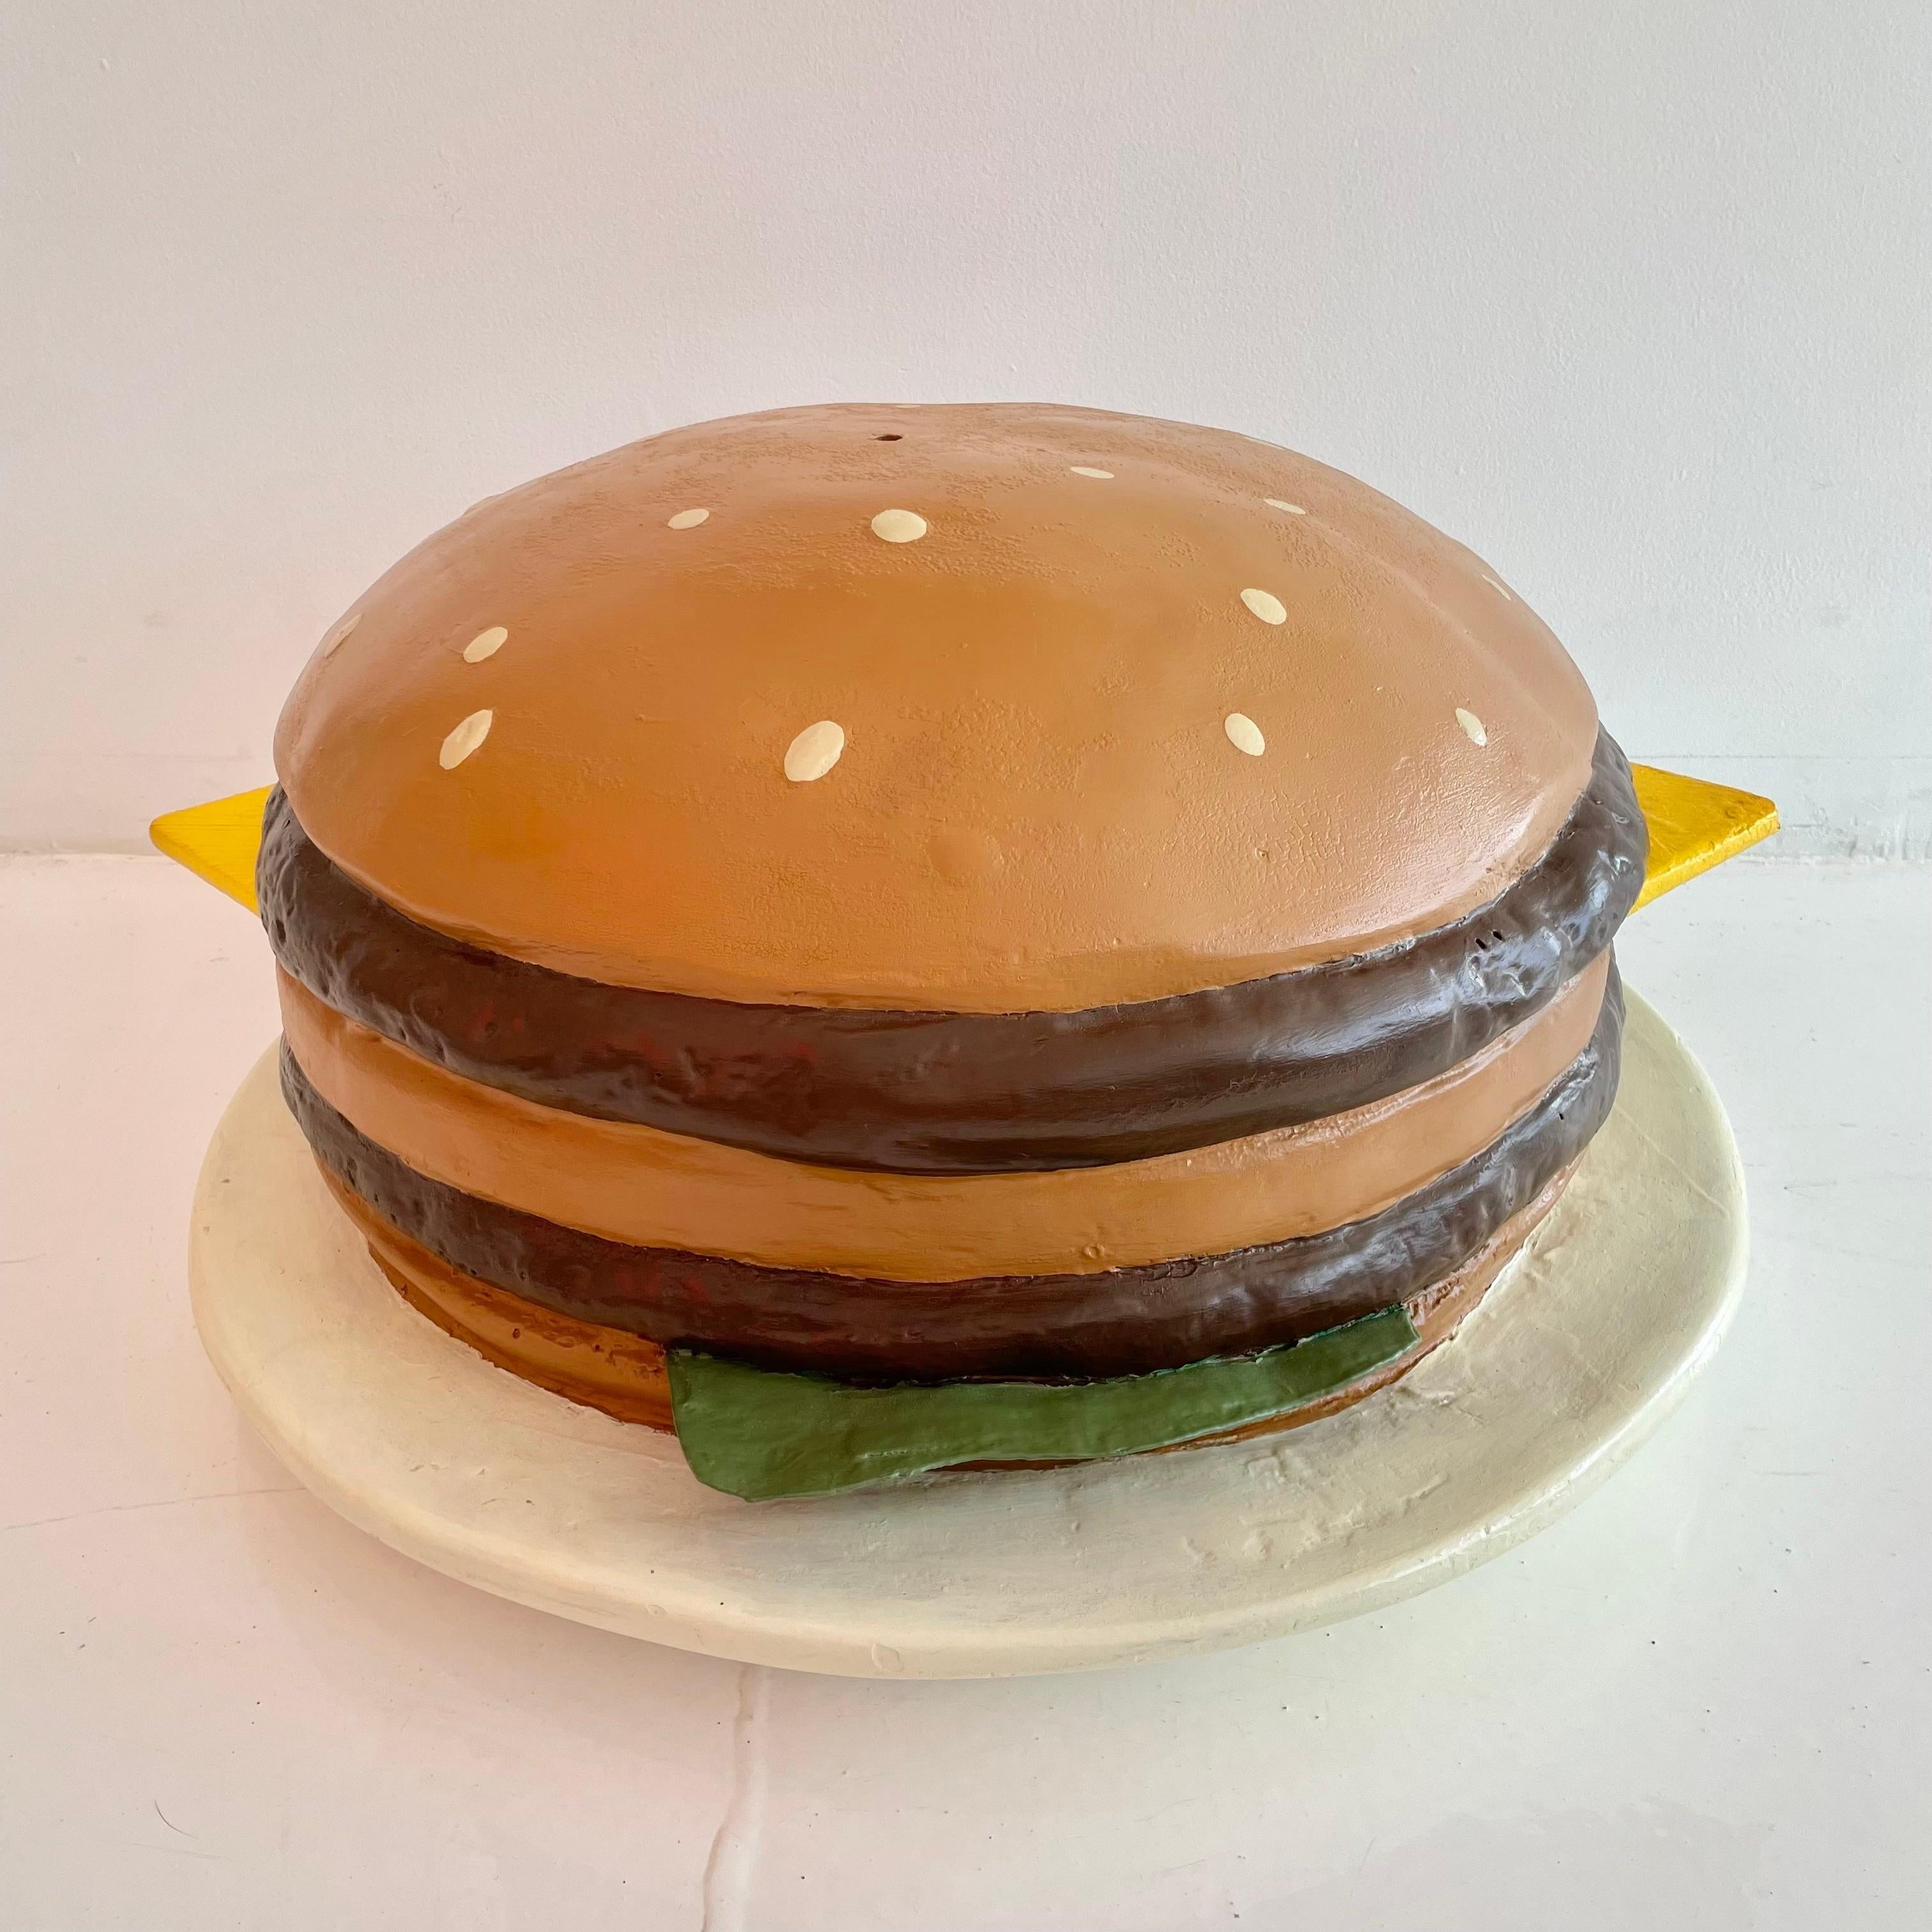 Überdimensionale Vintage-Cheeseburger-Pop-Art aus Fiberglas. Wahrscheinlich als Auslage in einem Geschäft verwendet. Handgefertigt aus Fiberglas und handbemalt mit vielen Details. Dreilagiges Brötchen, zwei Hamburger-Patties, Käse und Salat auf